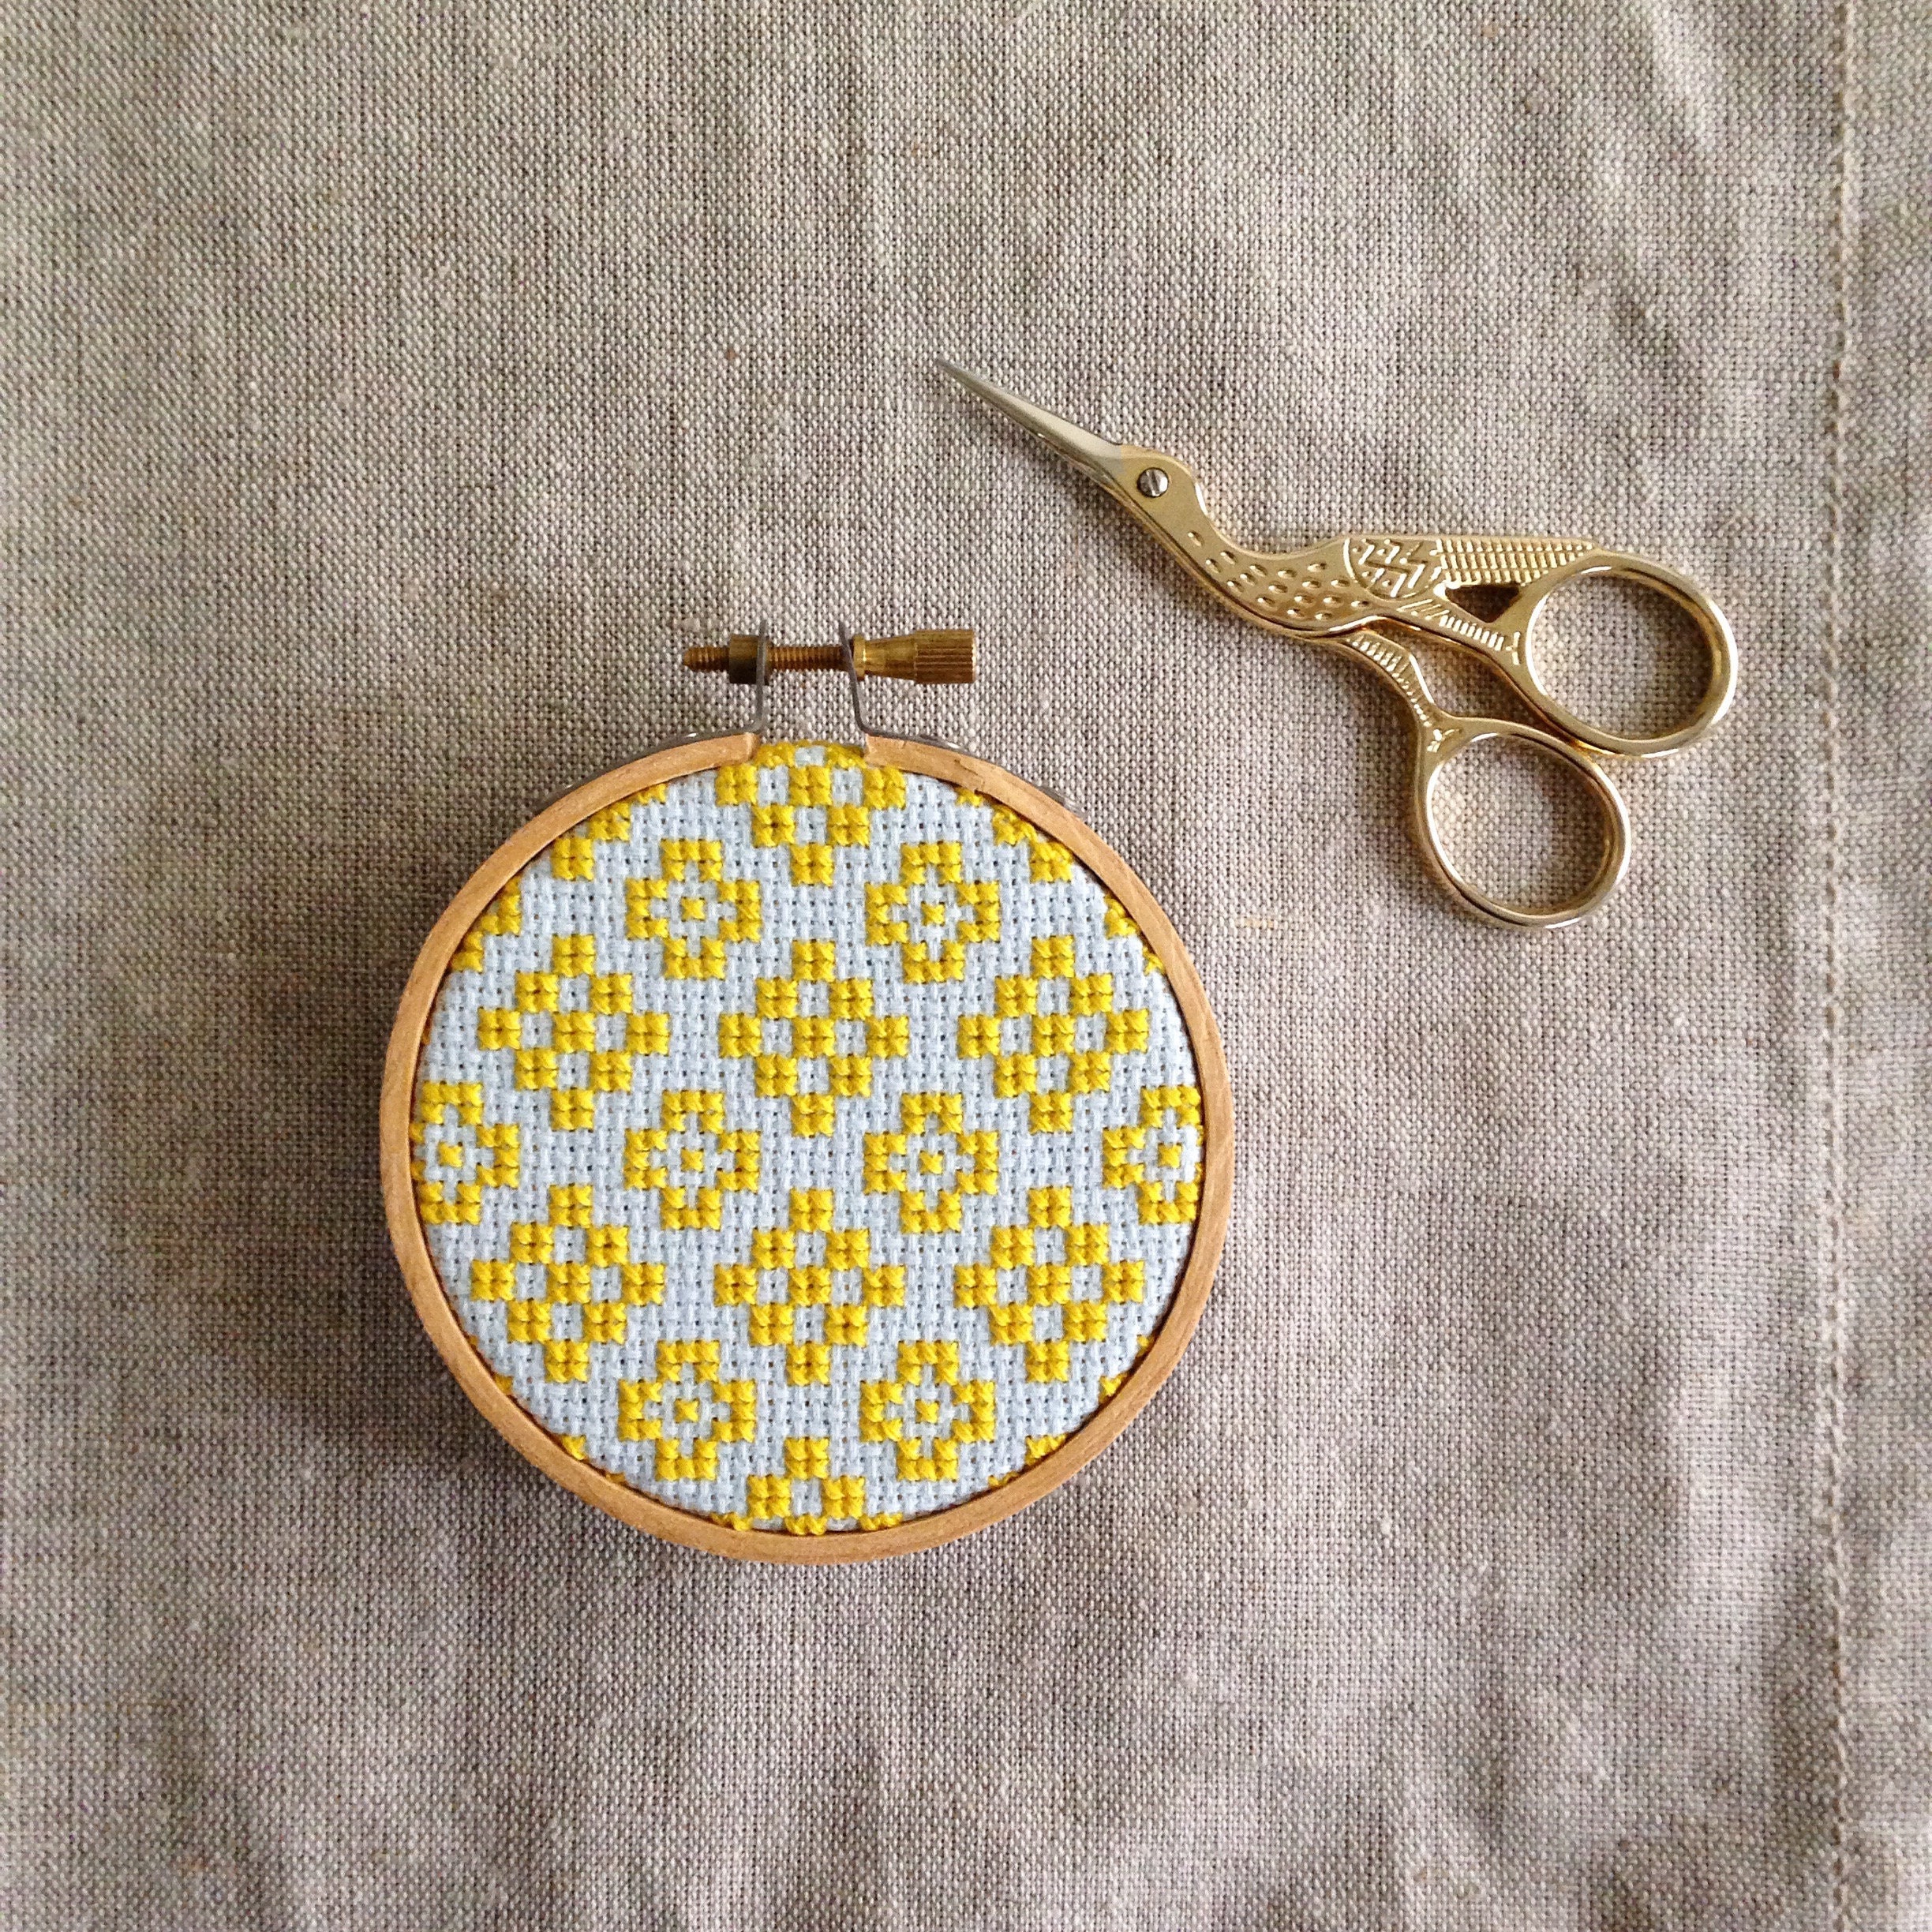 Janlynn Wood Embroidery Hoop 10